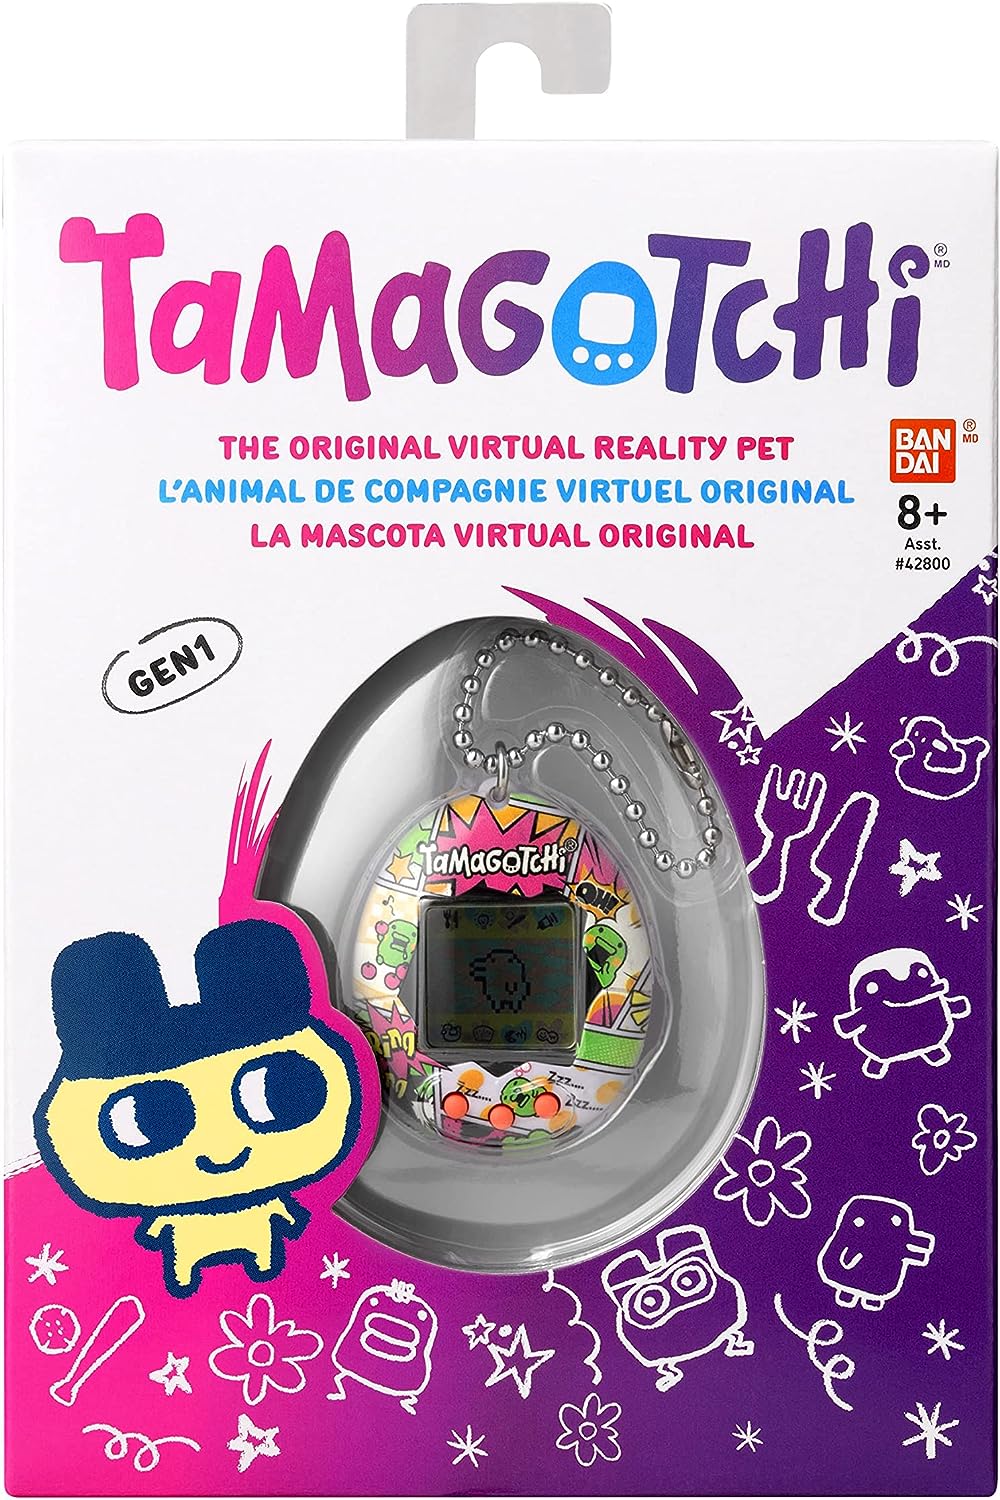 Tamagotchi Animal de compagnie électronique virt…